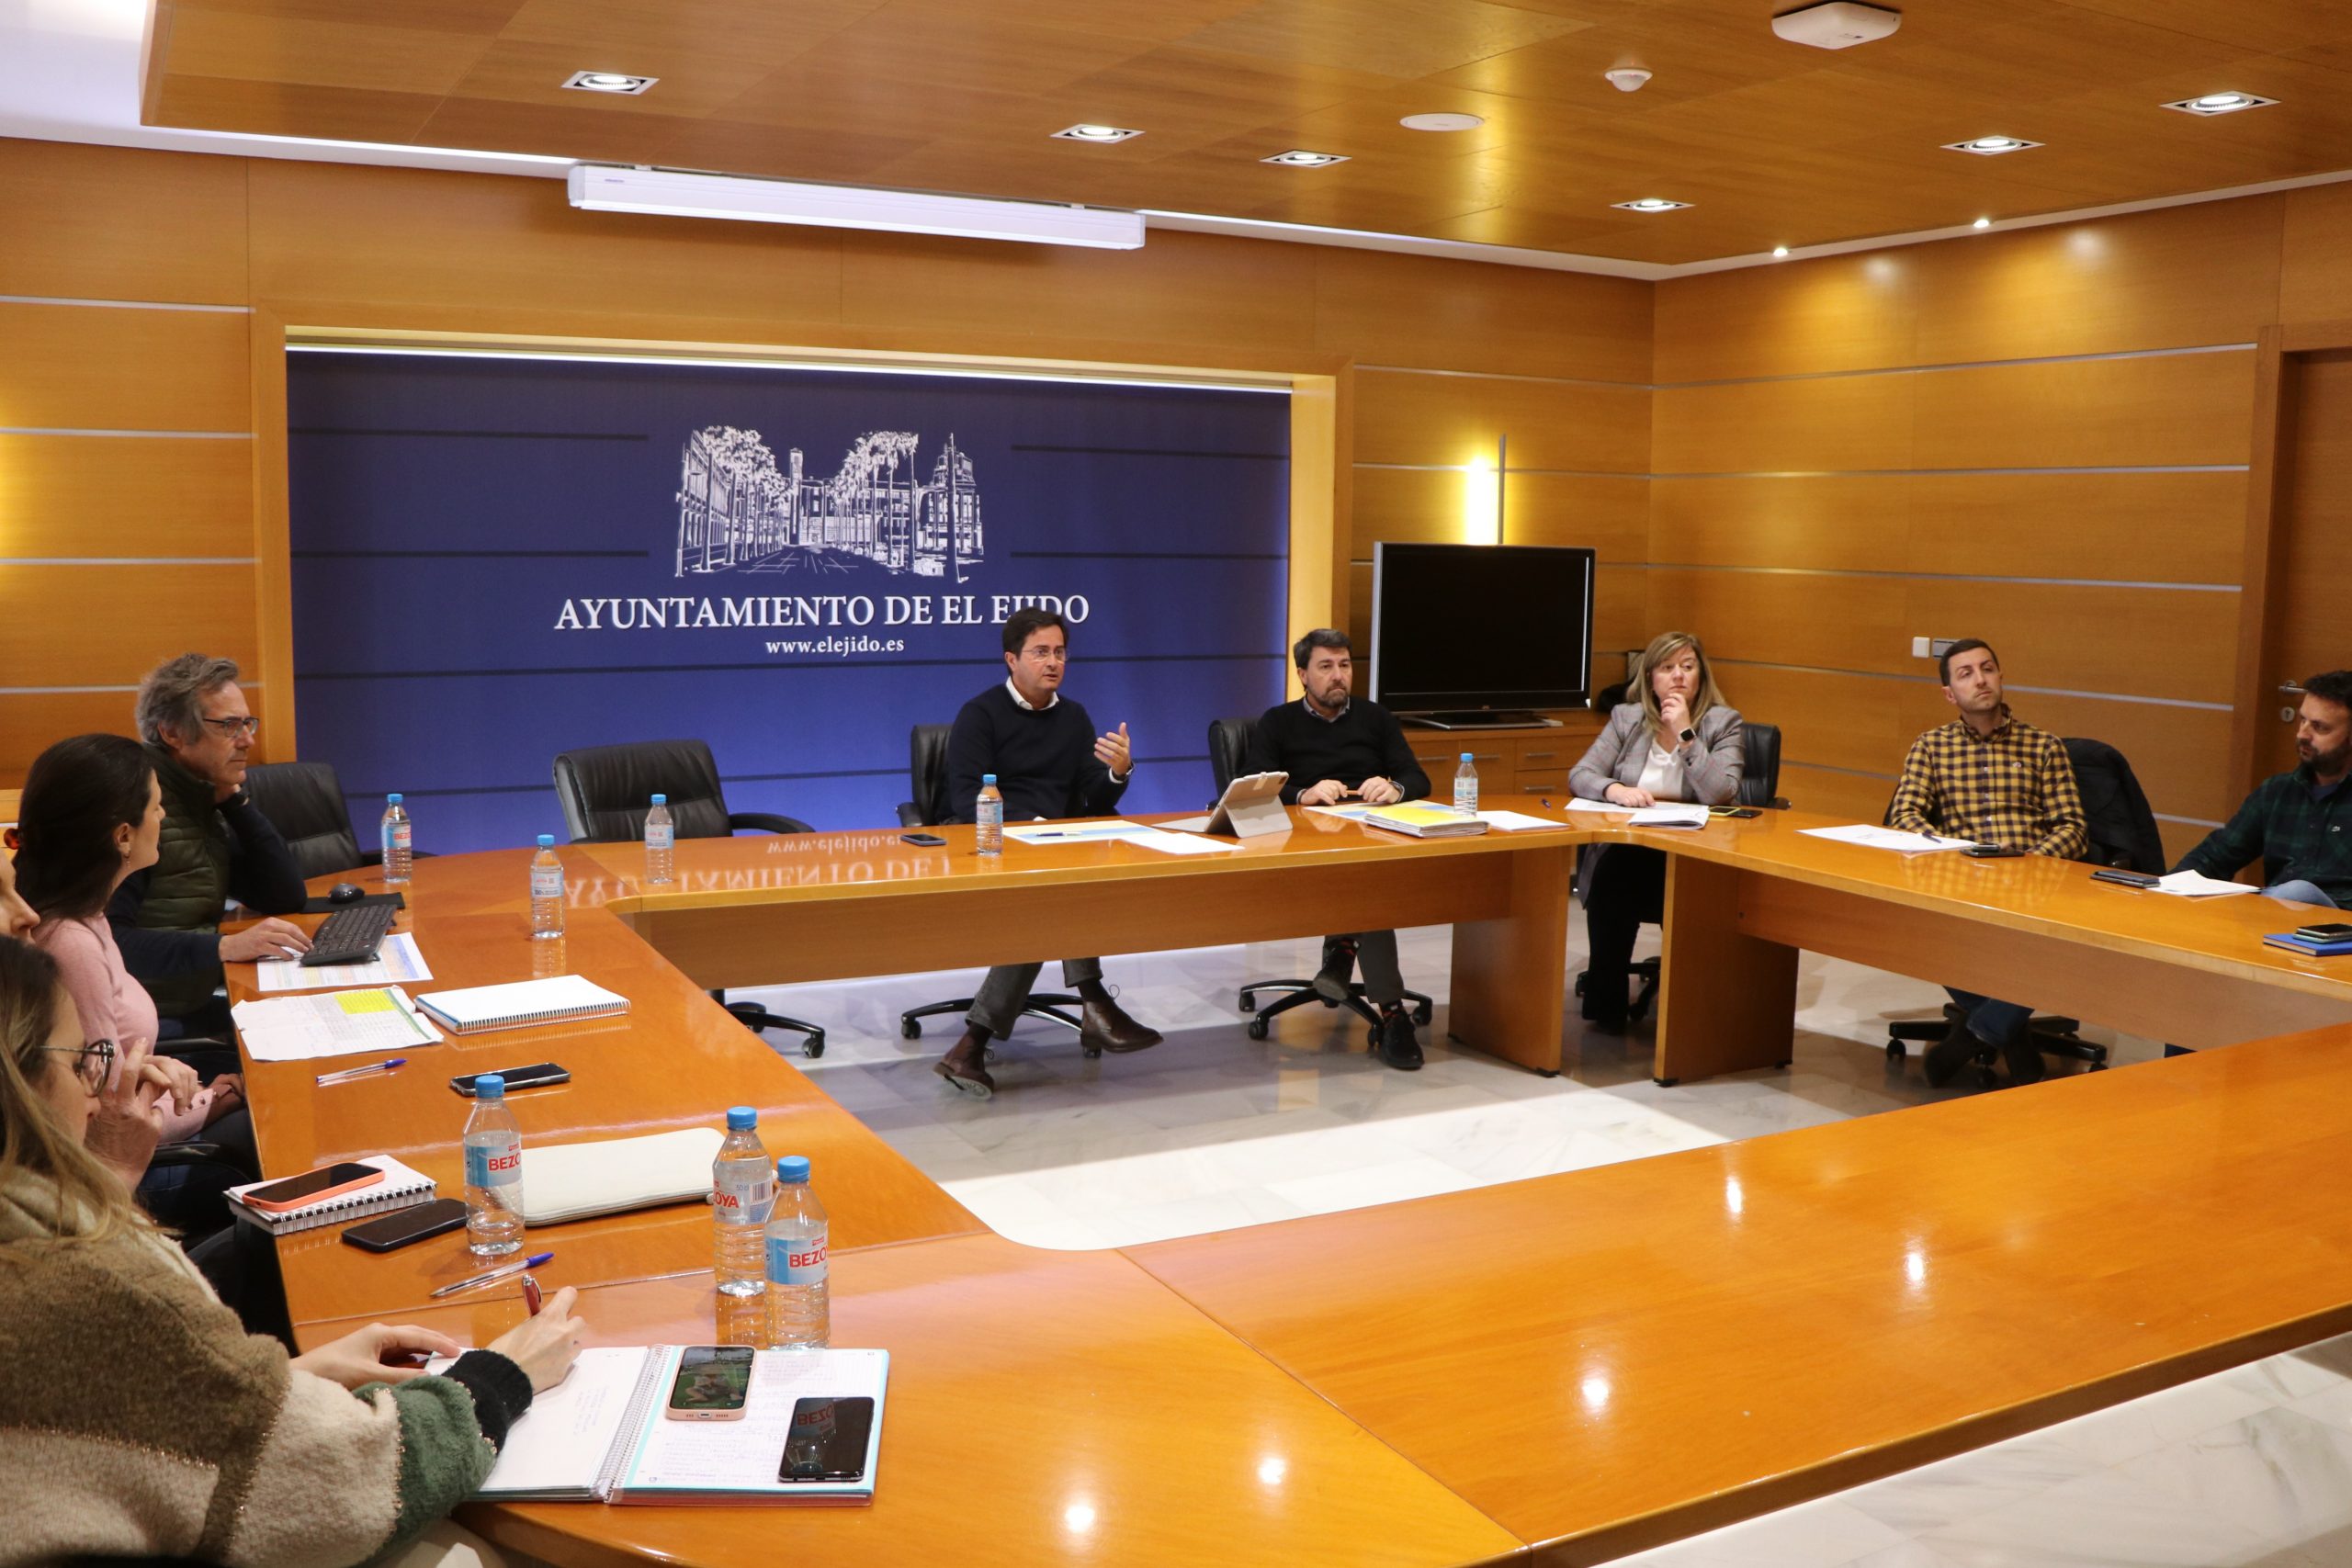 El Ayuntamiento ultima el proyecto de adecuación de los locales municipales del Residencial Portofino de Almerimar como centro de usos múltiples